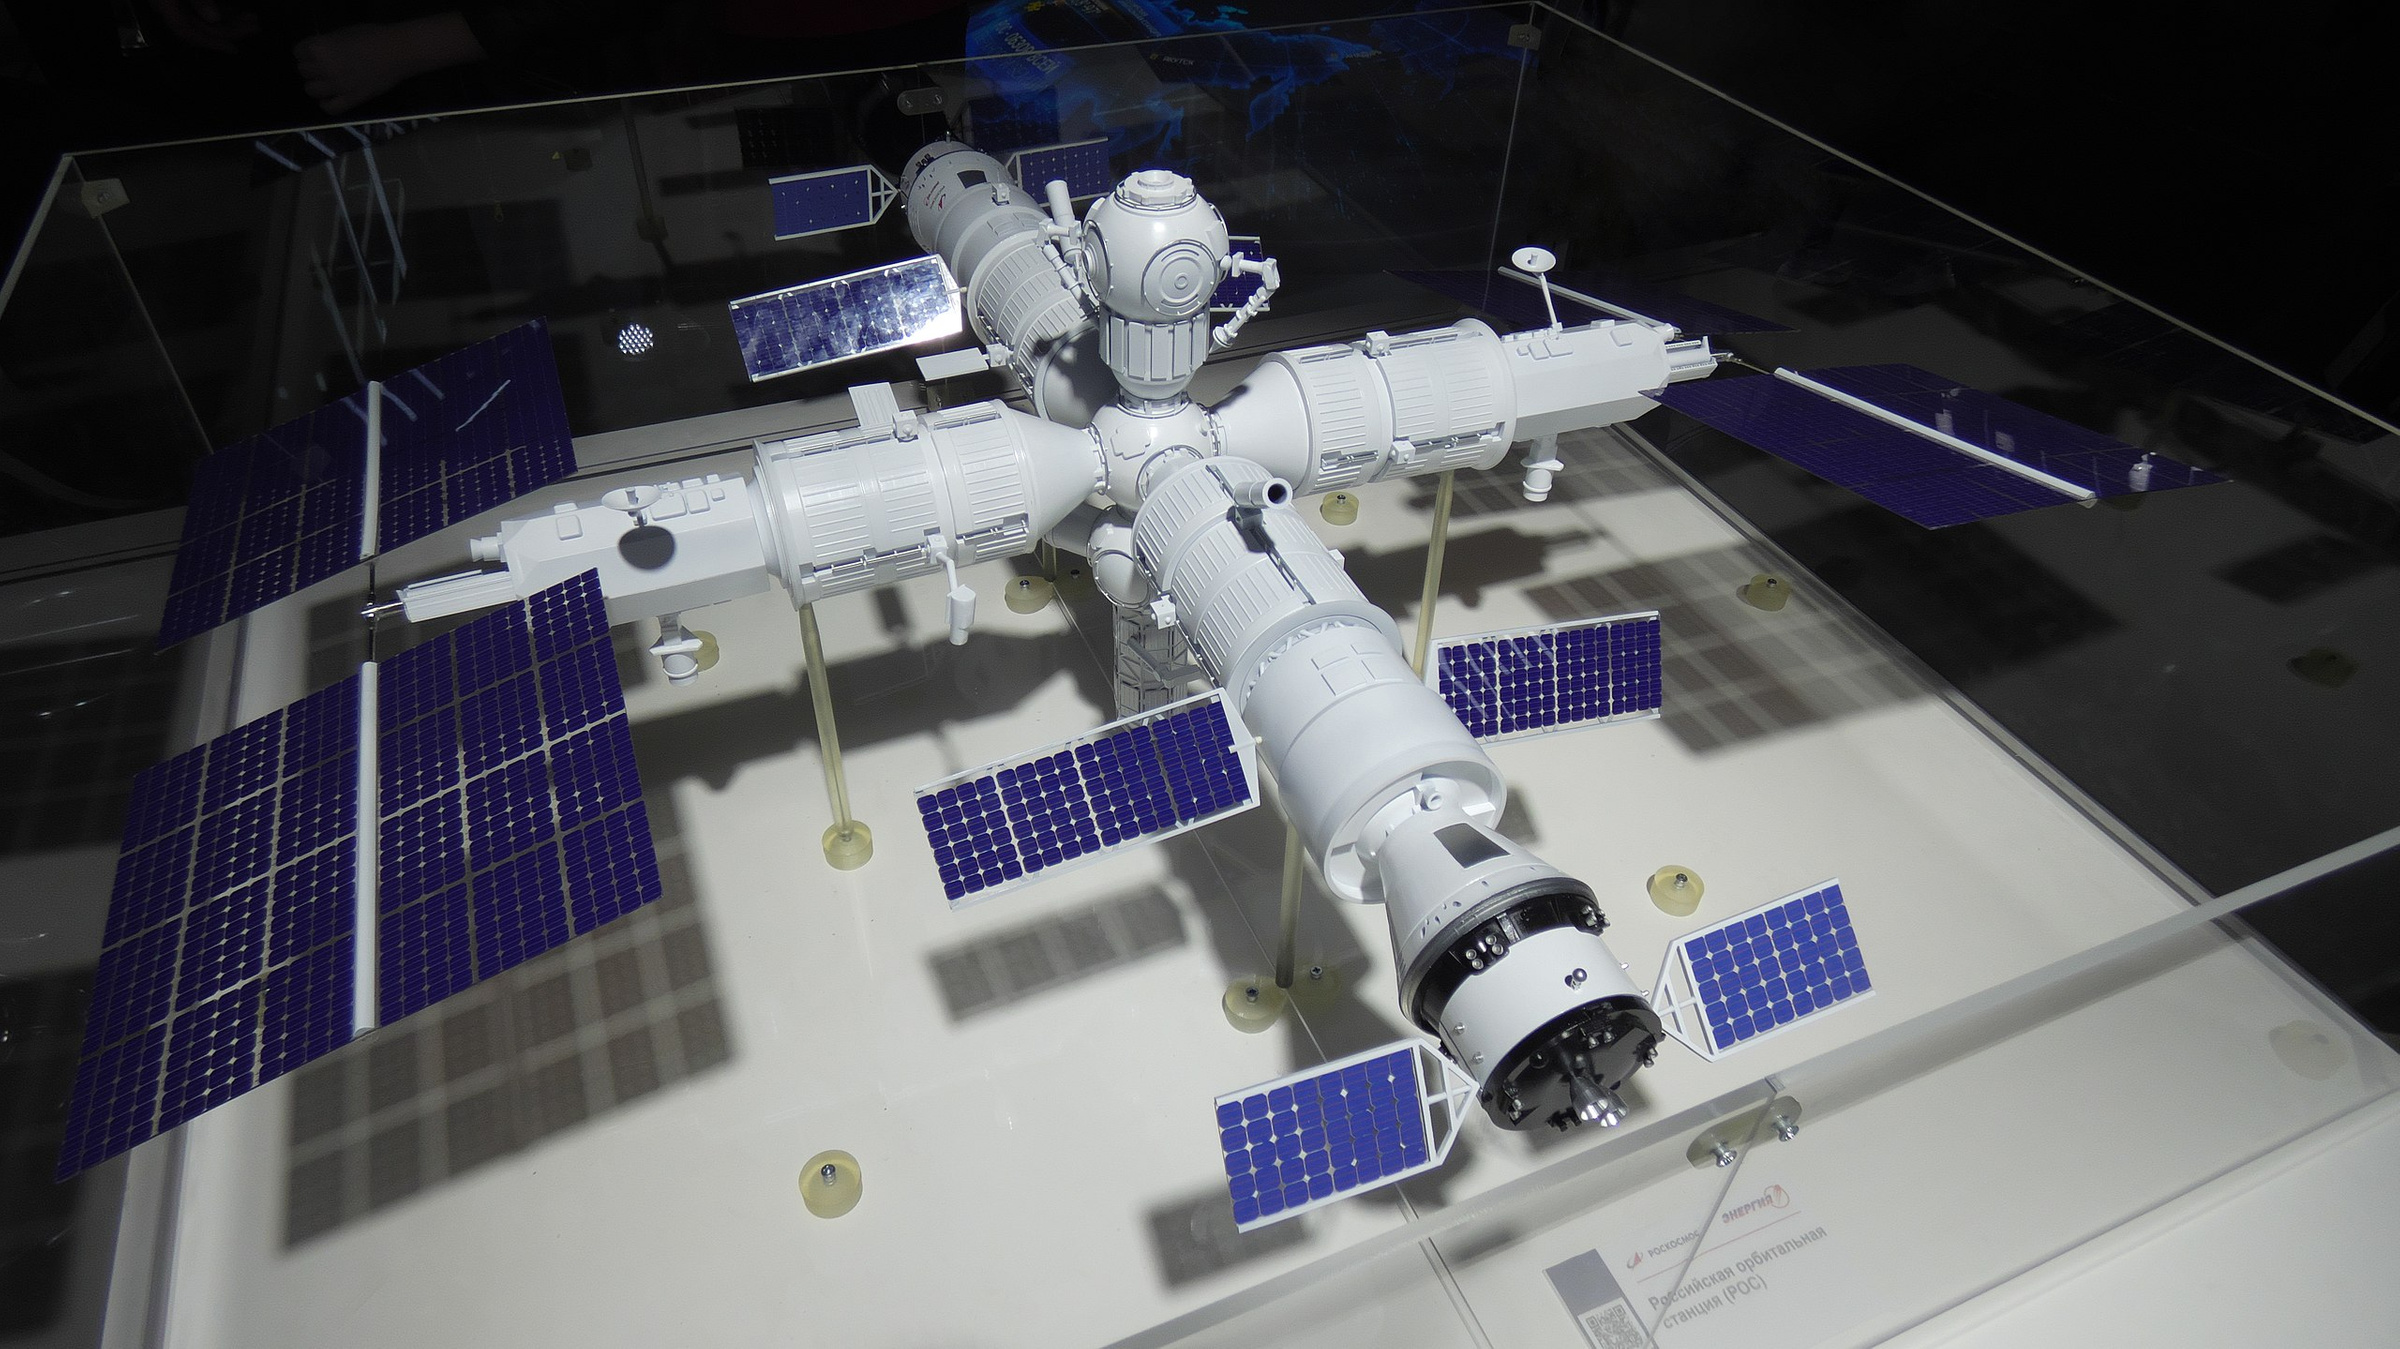 Макет Российской орбитальной служебной станции на базе модулей МКС на выставке "Армия-2022". Фото © Wikipedia / Kirill Borisenko